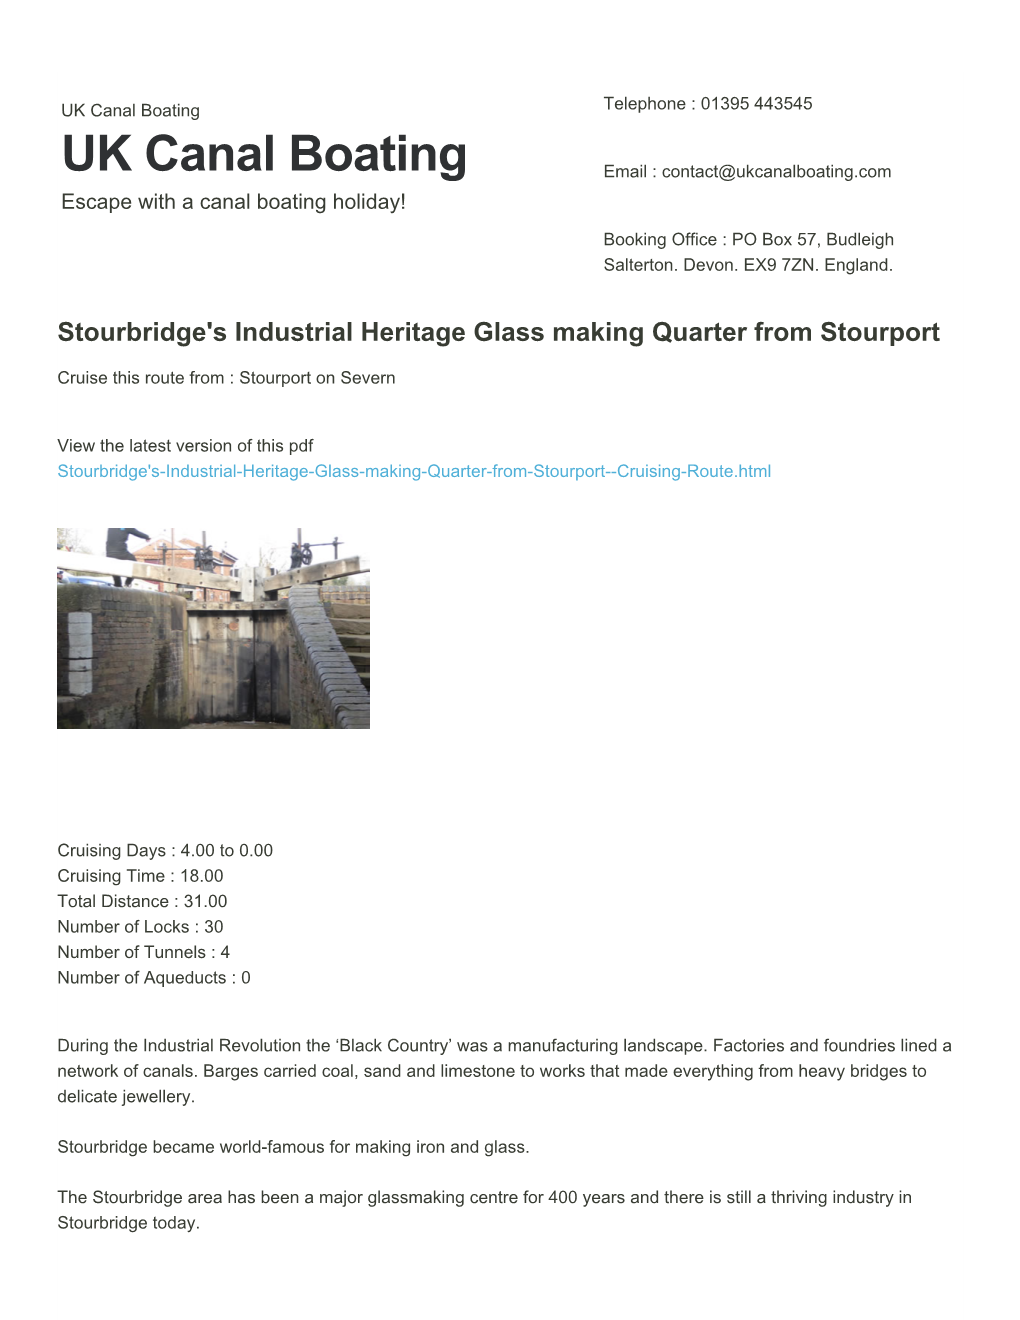 Stourbridge's Industrial Heritage Glass Making Quarter from Stourport